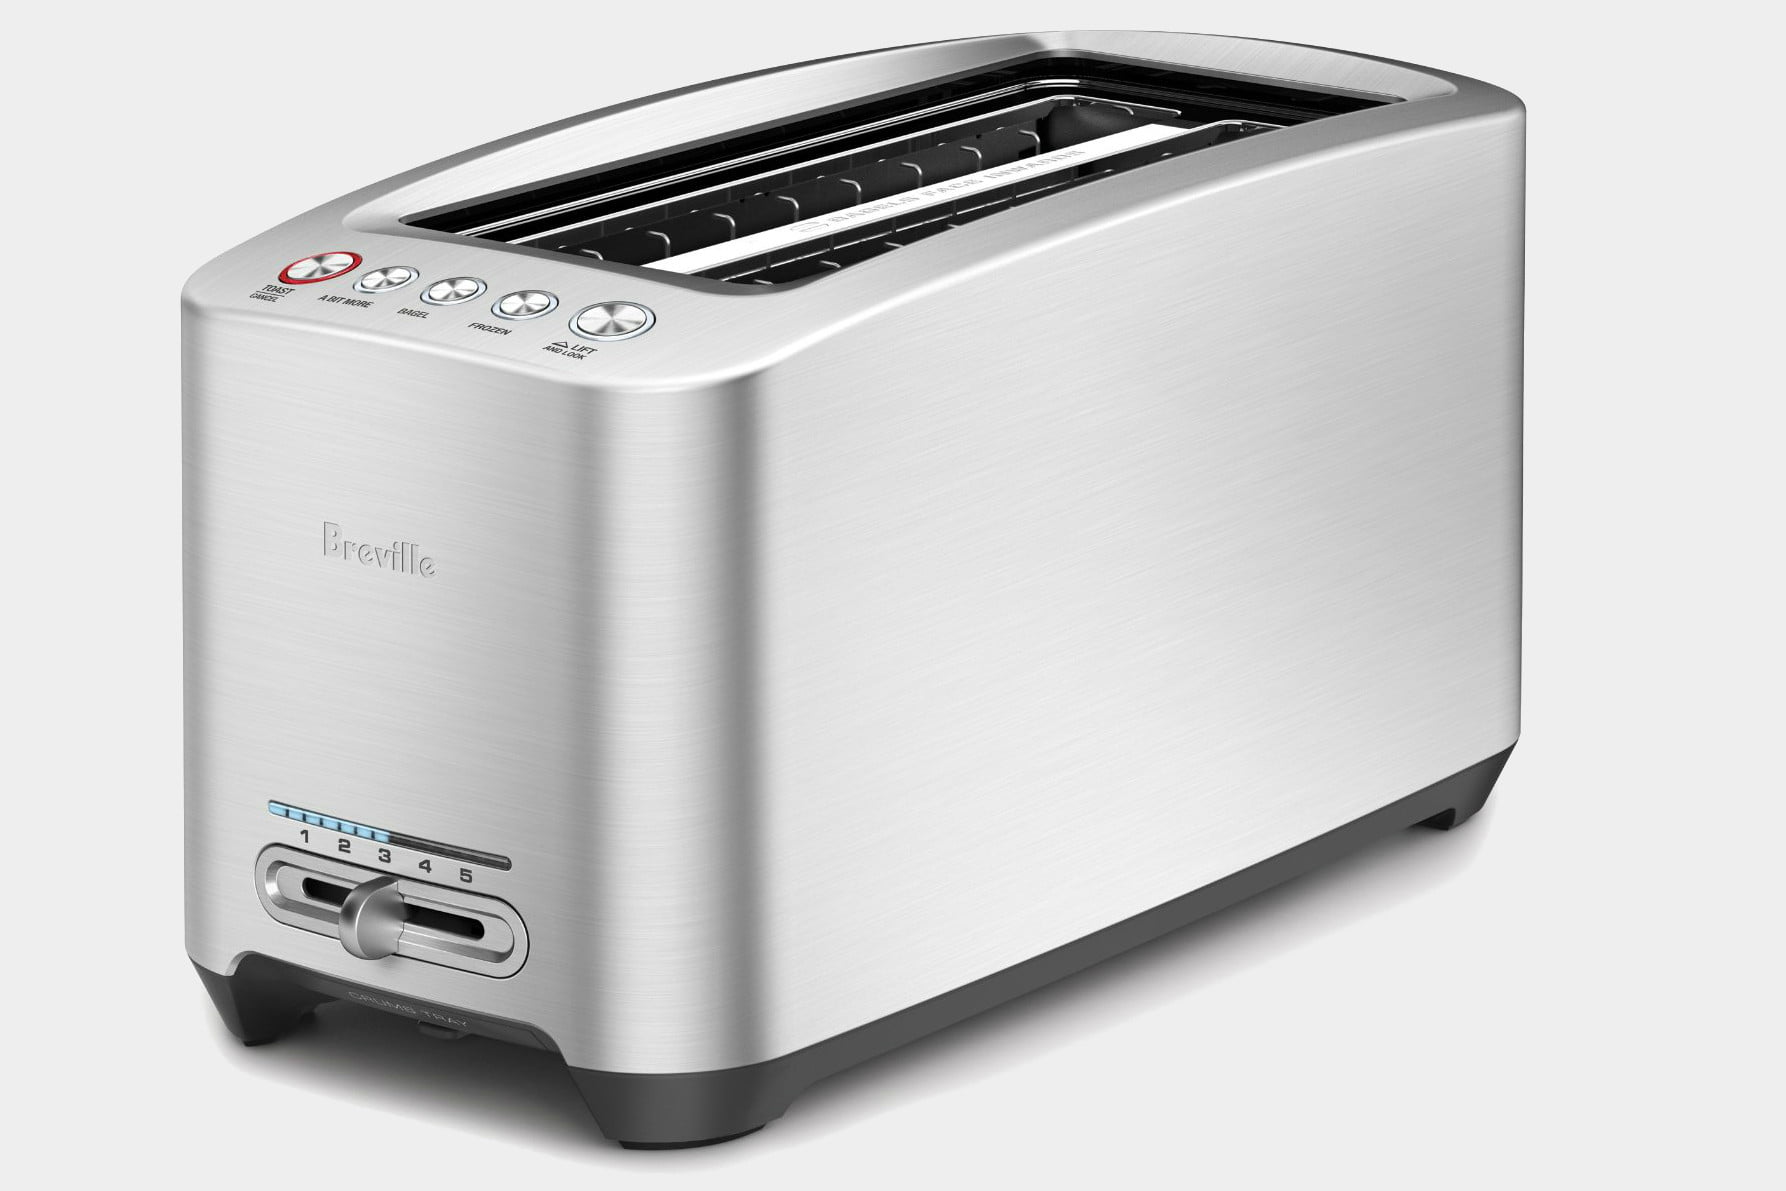 https://es.digitaltrends.com/wp-content/uploads/2019/05/breville-toaster.jpg?fit=720%2C480&p=1